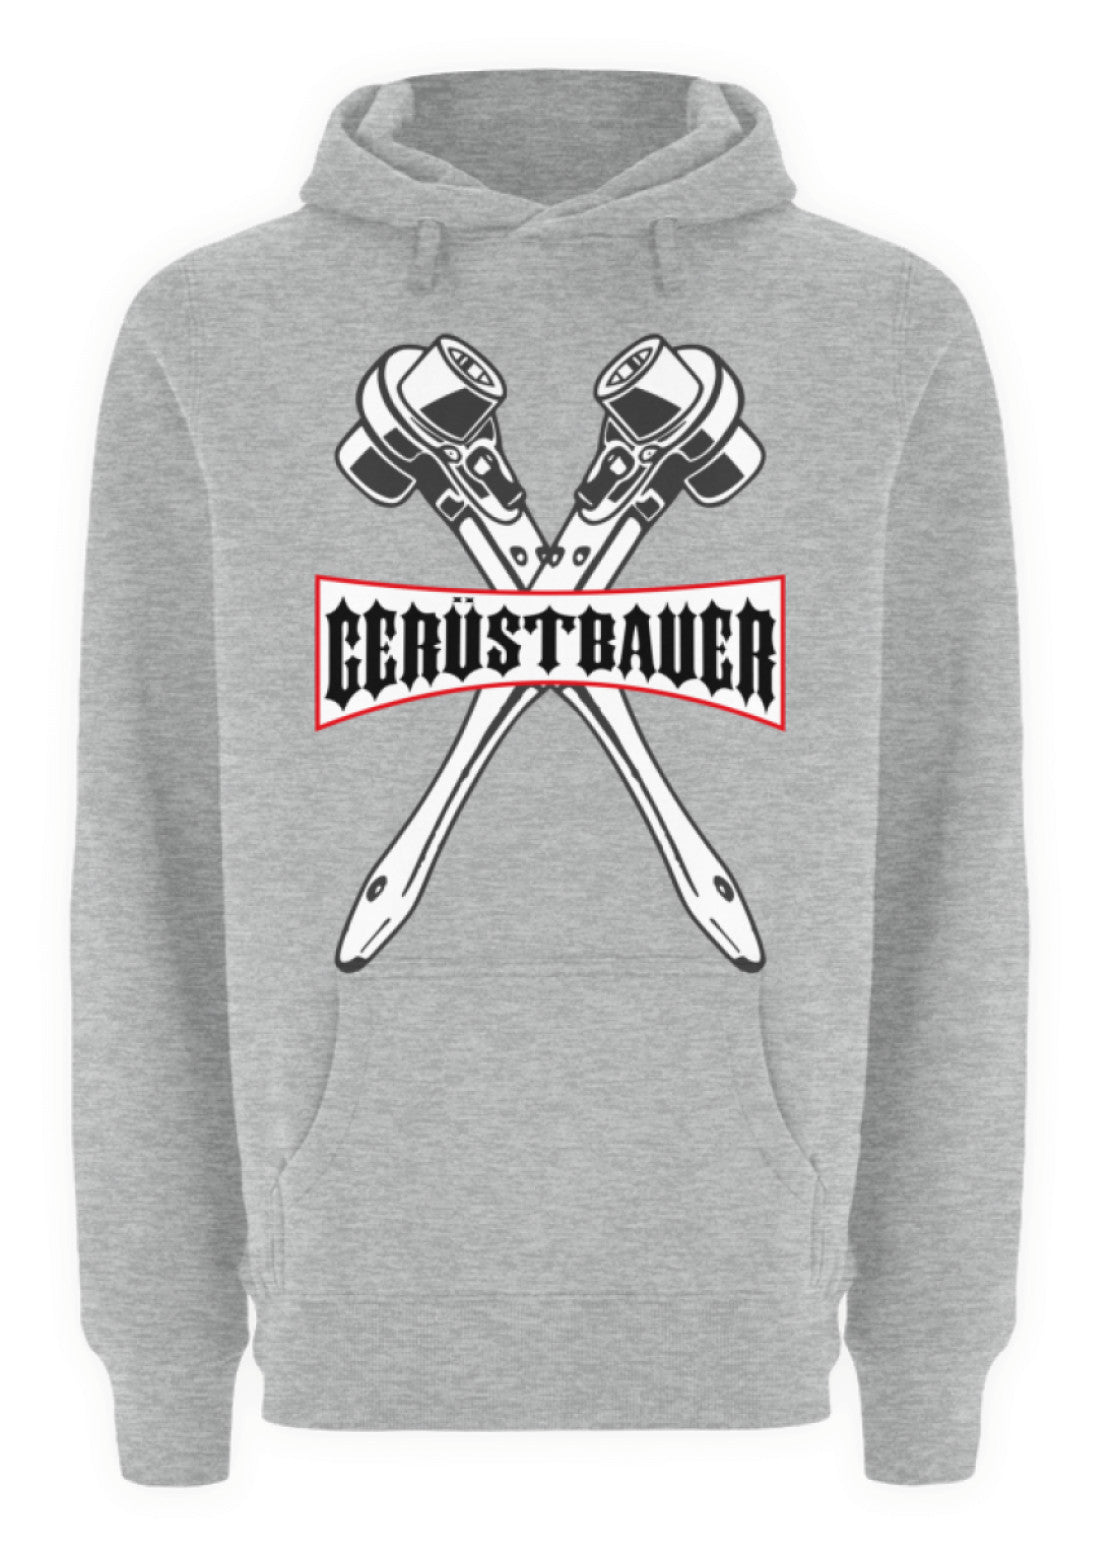 Gerüstbauer - Ratsche Premium Hoodie €44.95 Gerüstbauer - Shop >>